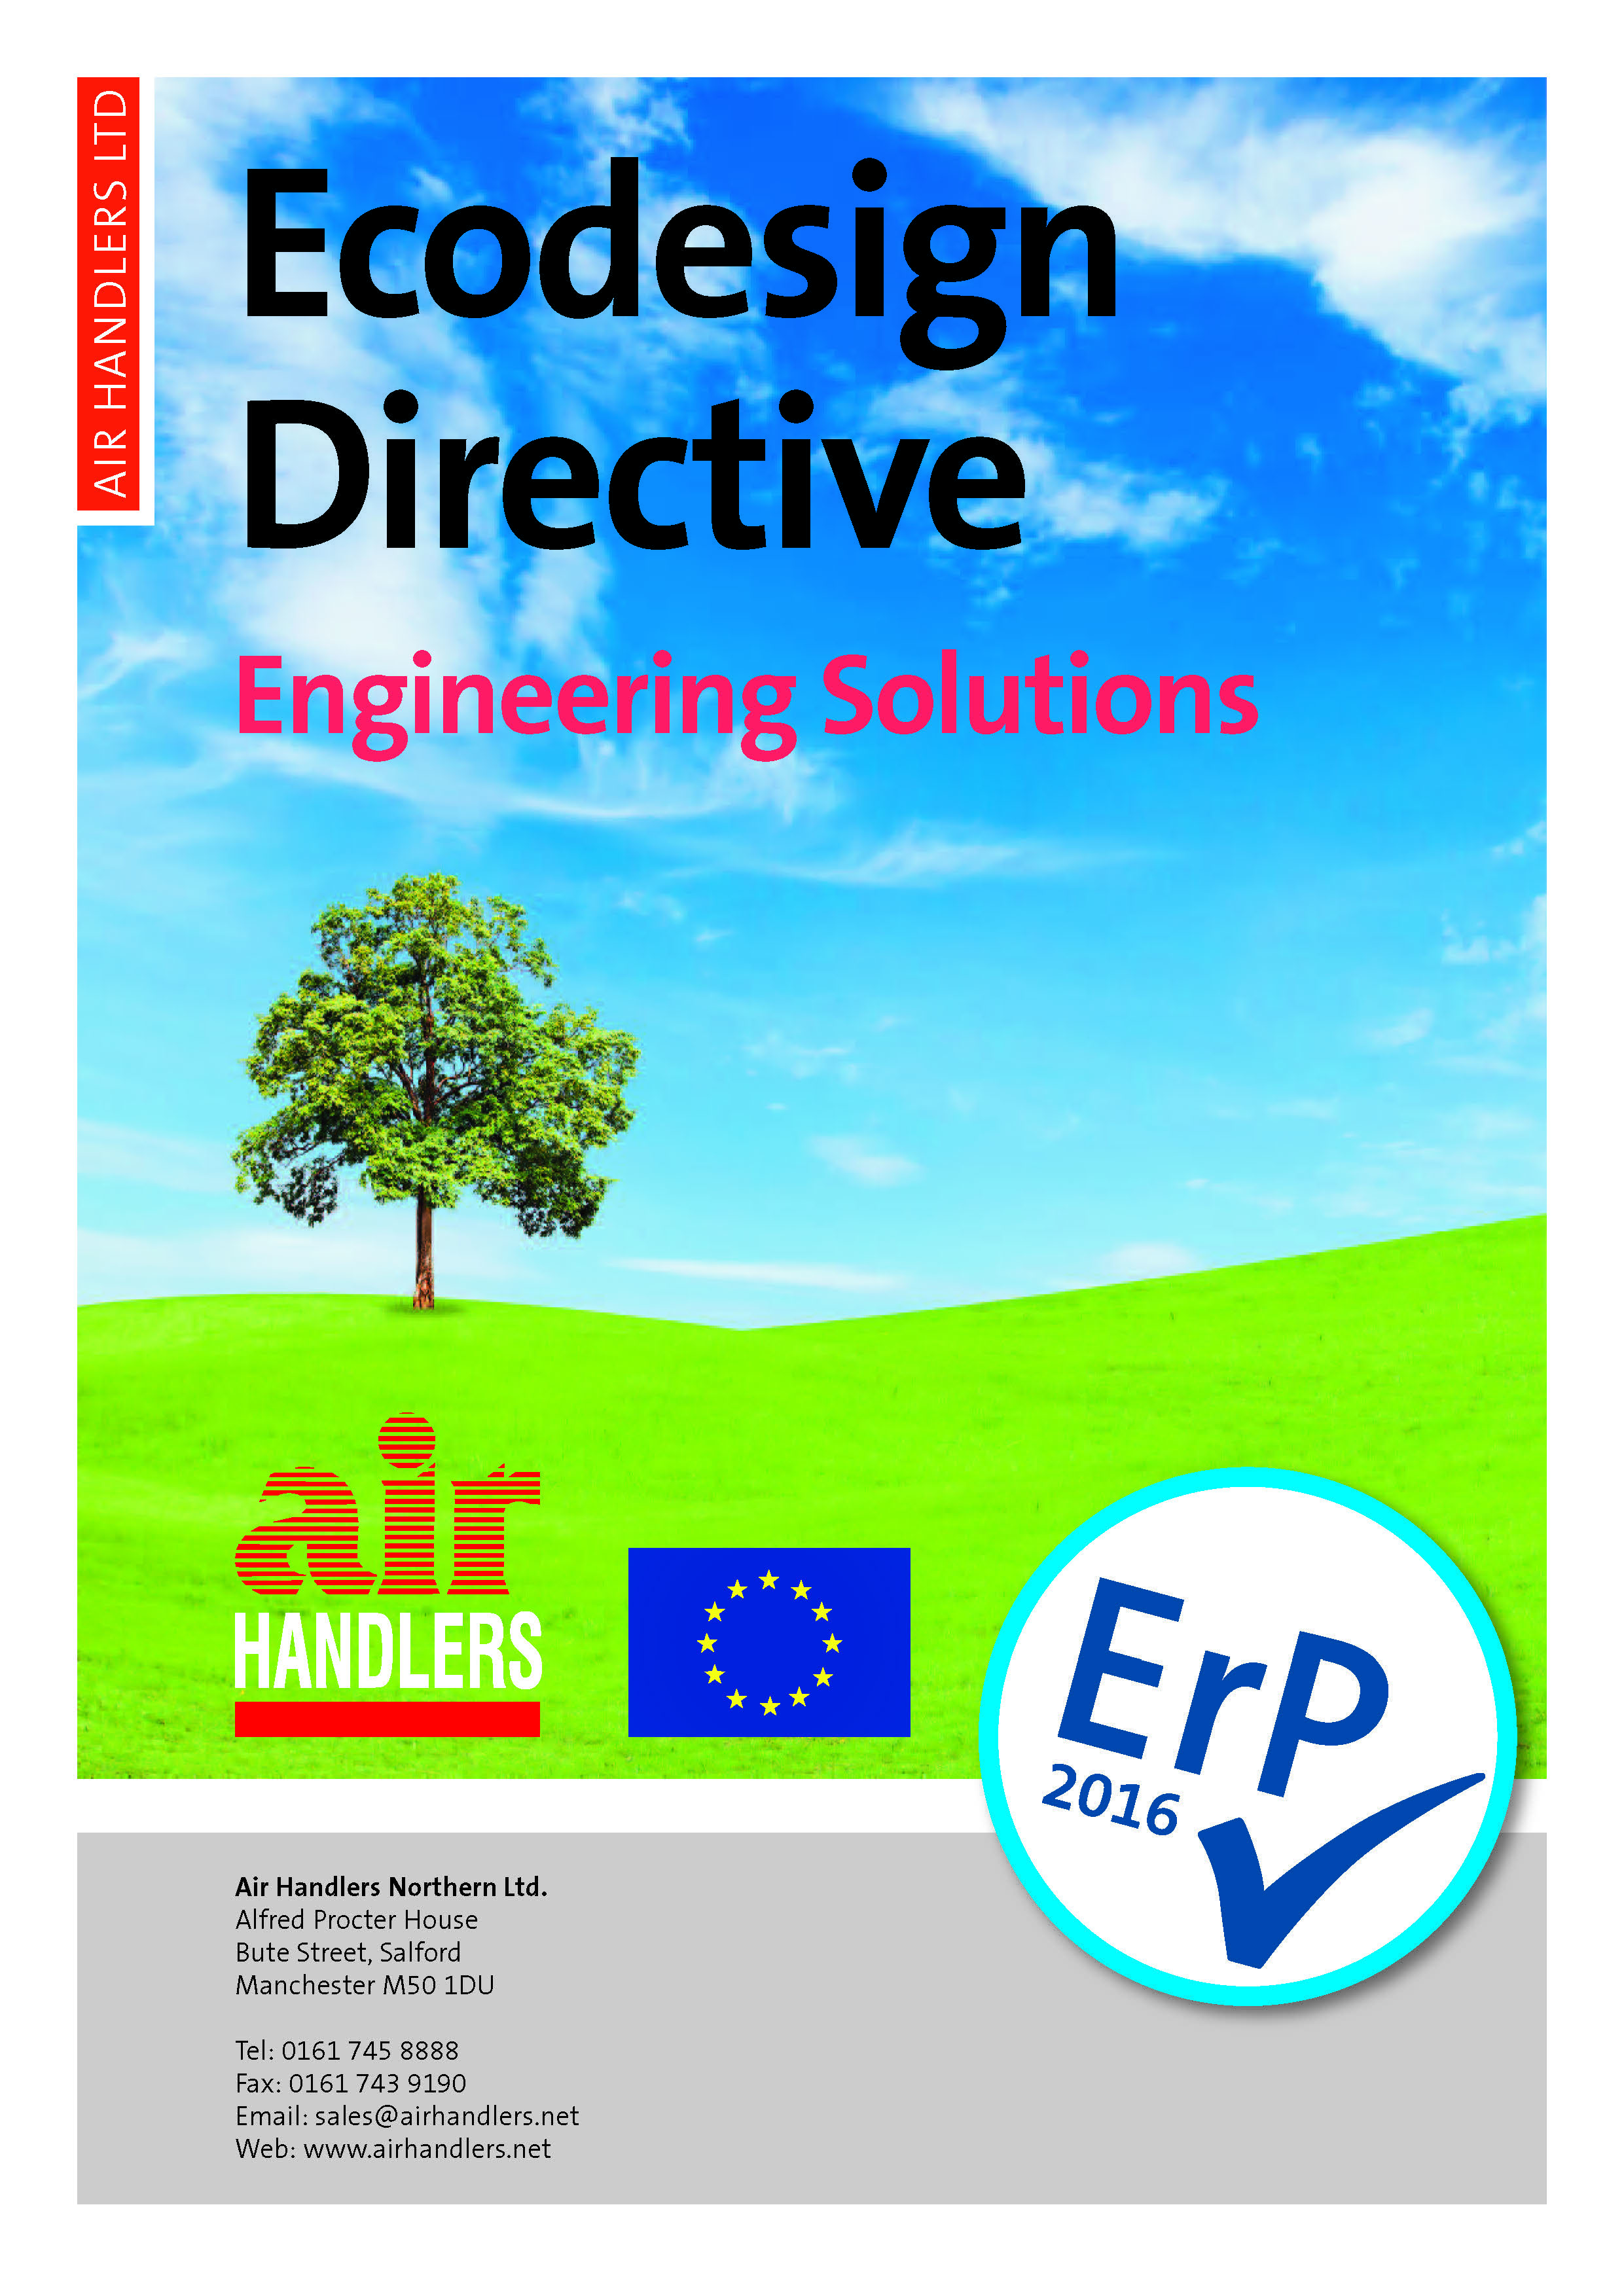 Ecodesign Directive